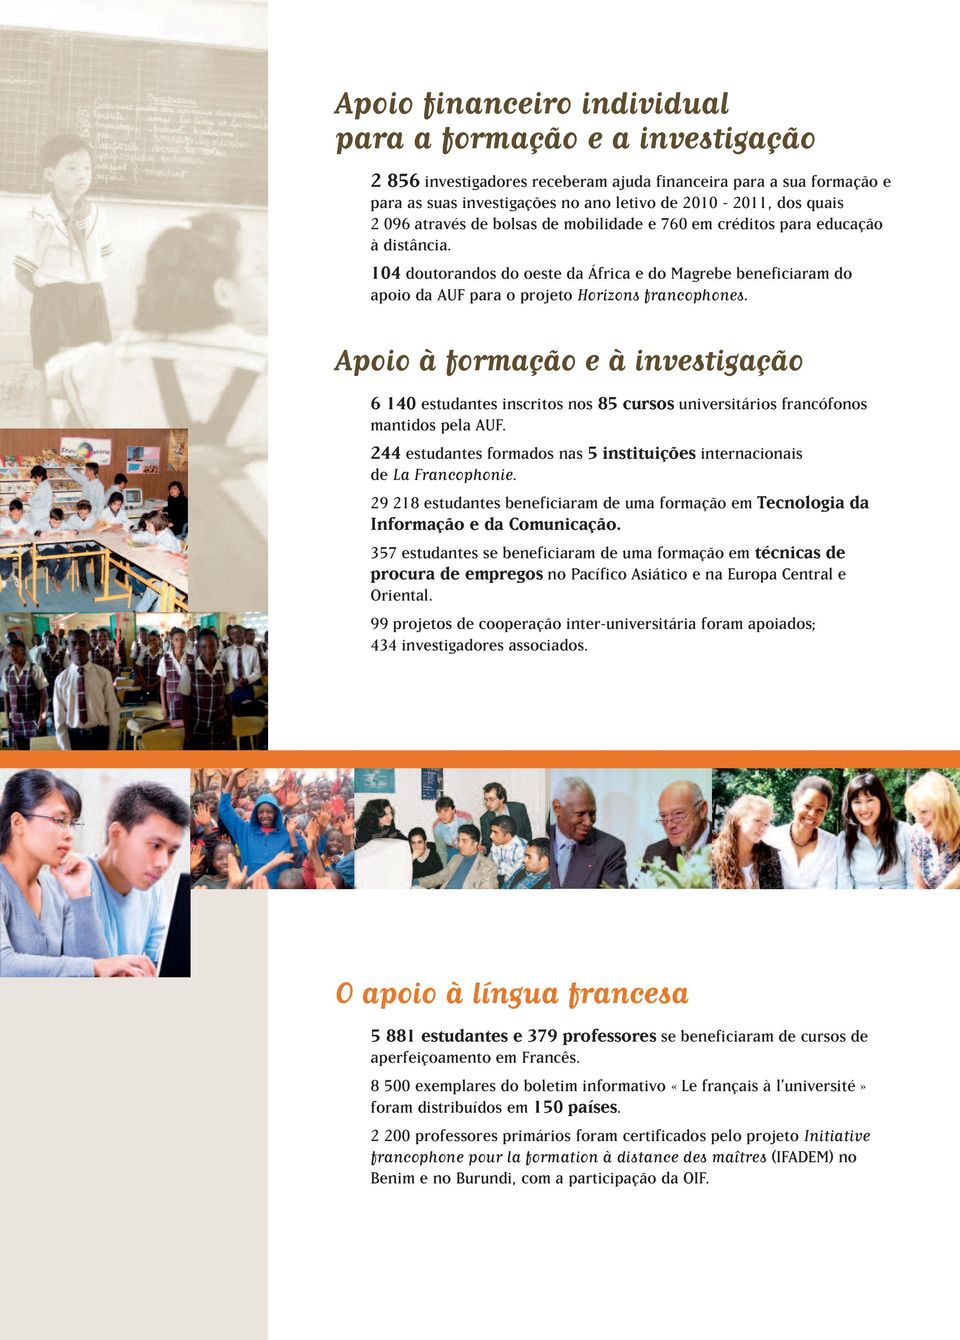 Apoio à formação e à investigação 6 140 estudantes inscritos nos 85 cursos universitários francófonos mantidos pela AUF. 244 estudantes formados nas 5 instituições internacionais de La Francophonie.